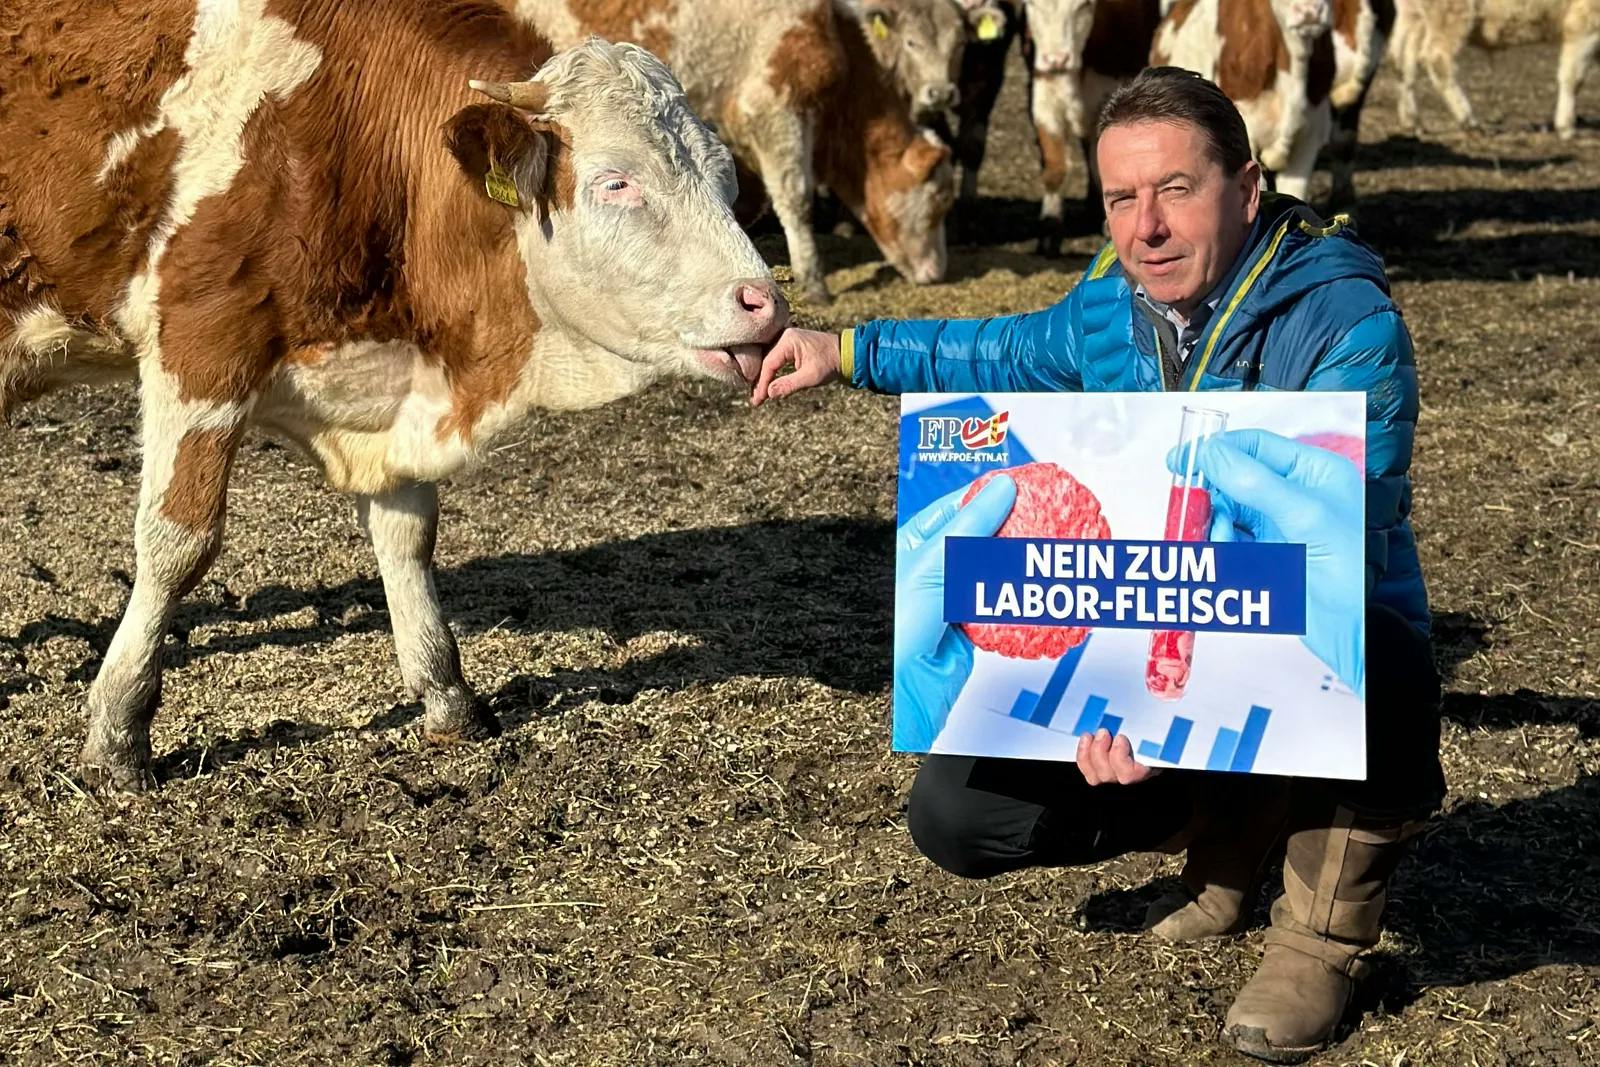 „Fleisch muss Fleisch bleiben“: FPÖ startet Petition gegen Laborfleisch